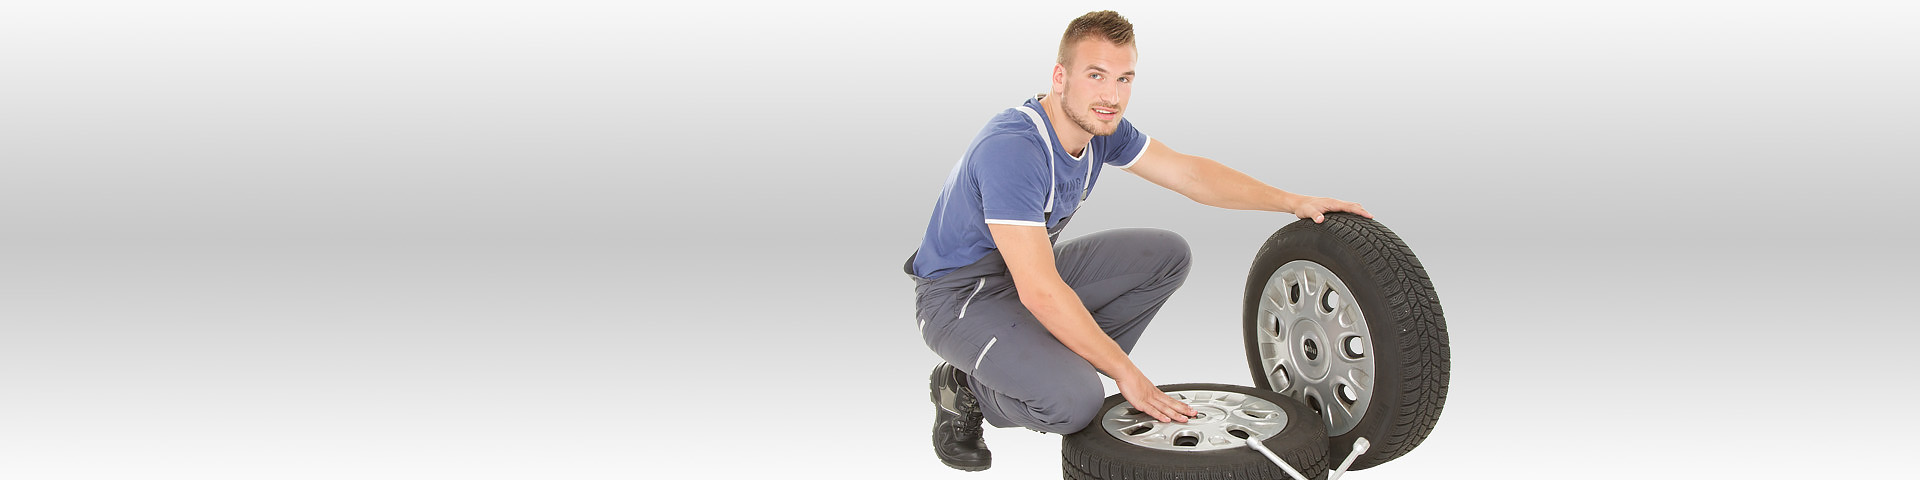 Junger Mann beim Reifenwechsel - Kfz-Versicherung vom Münchener Verein